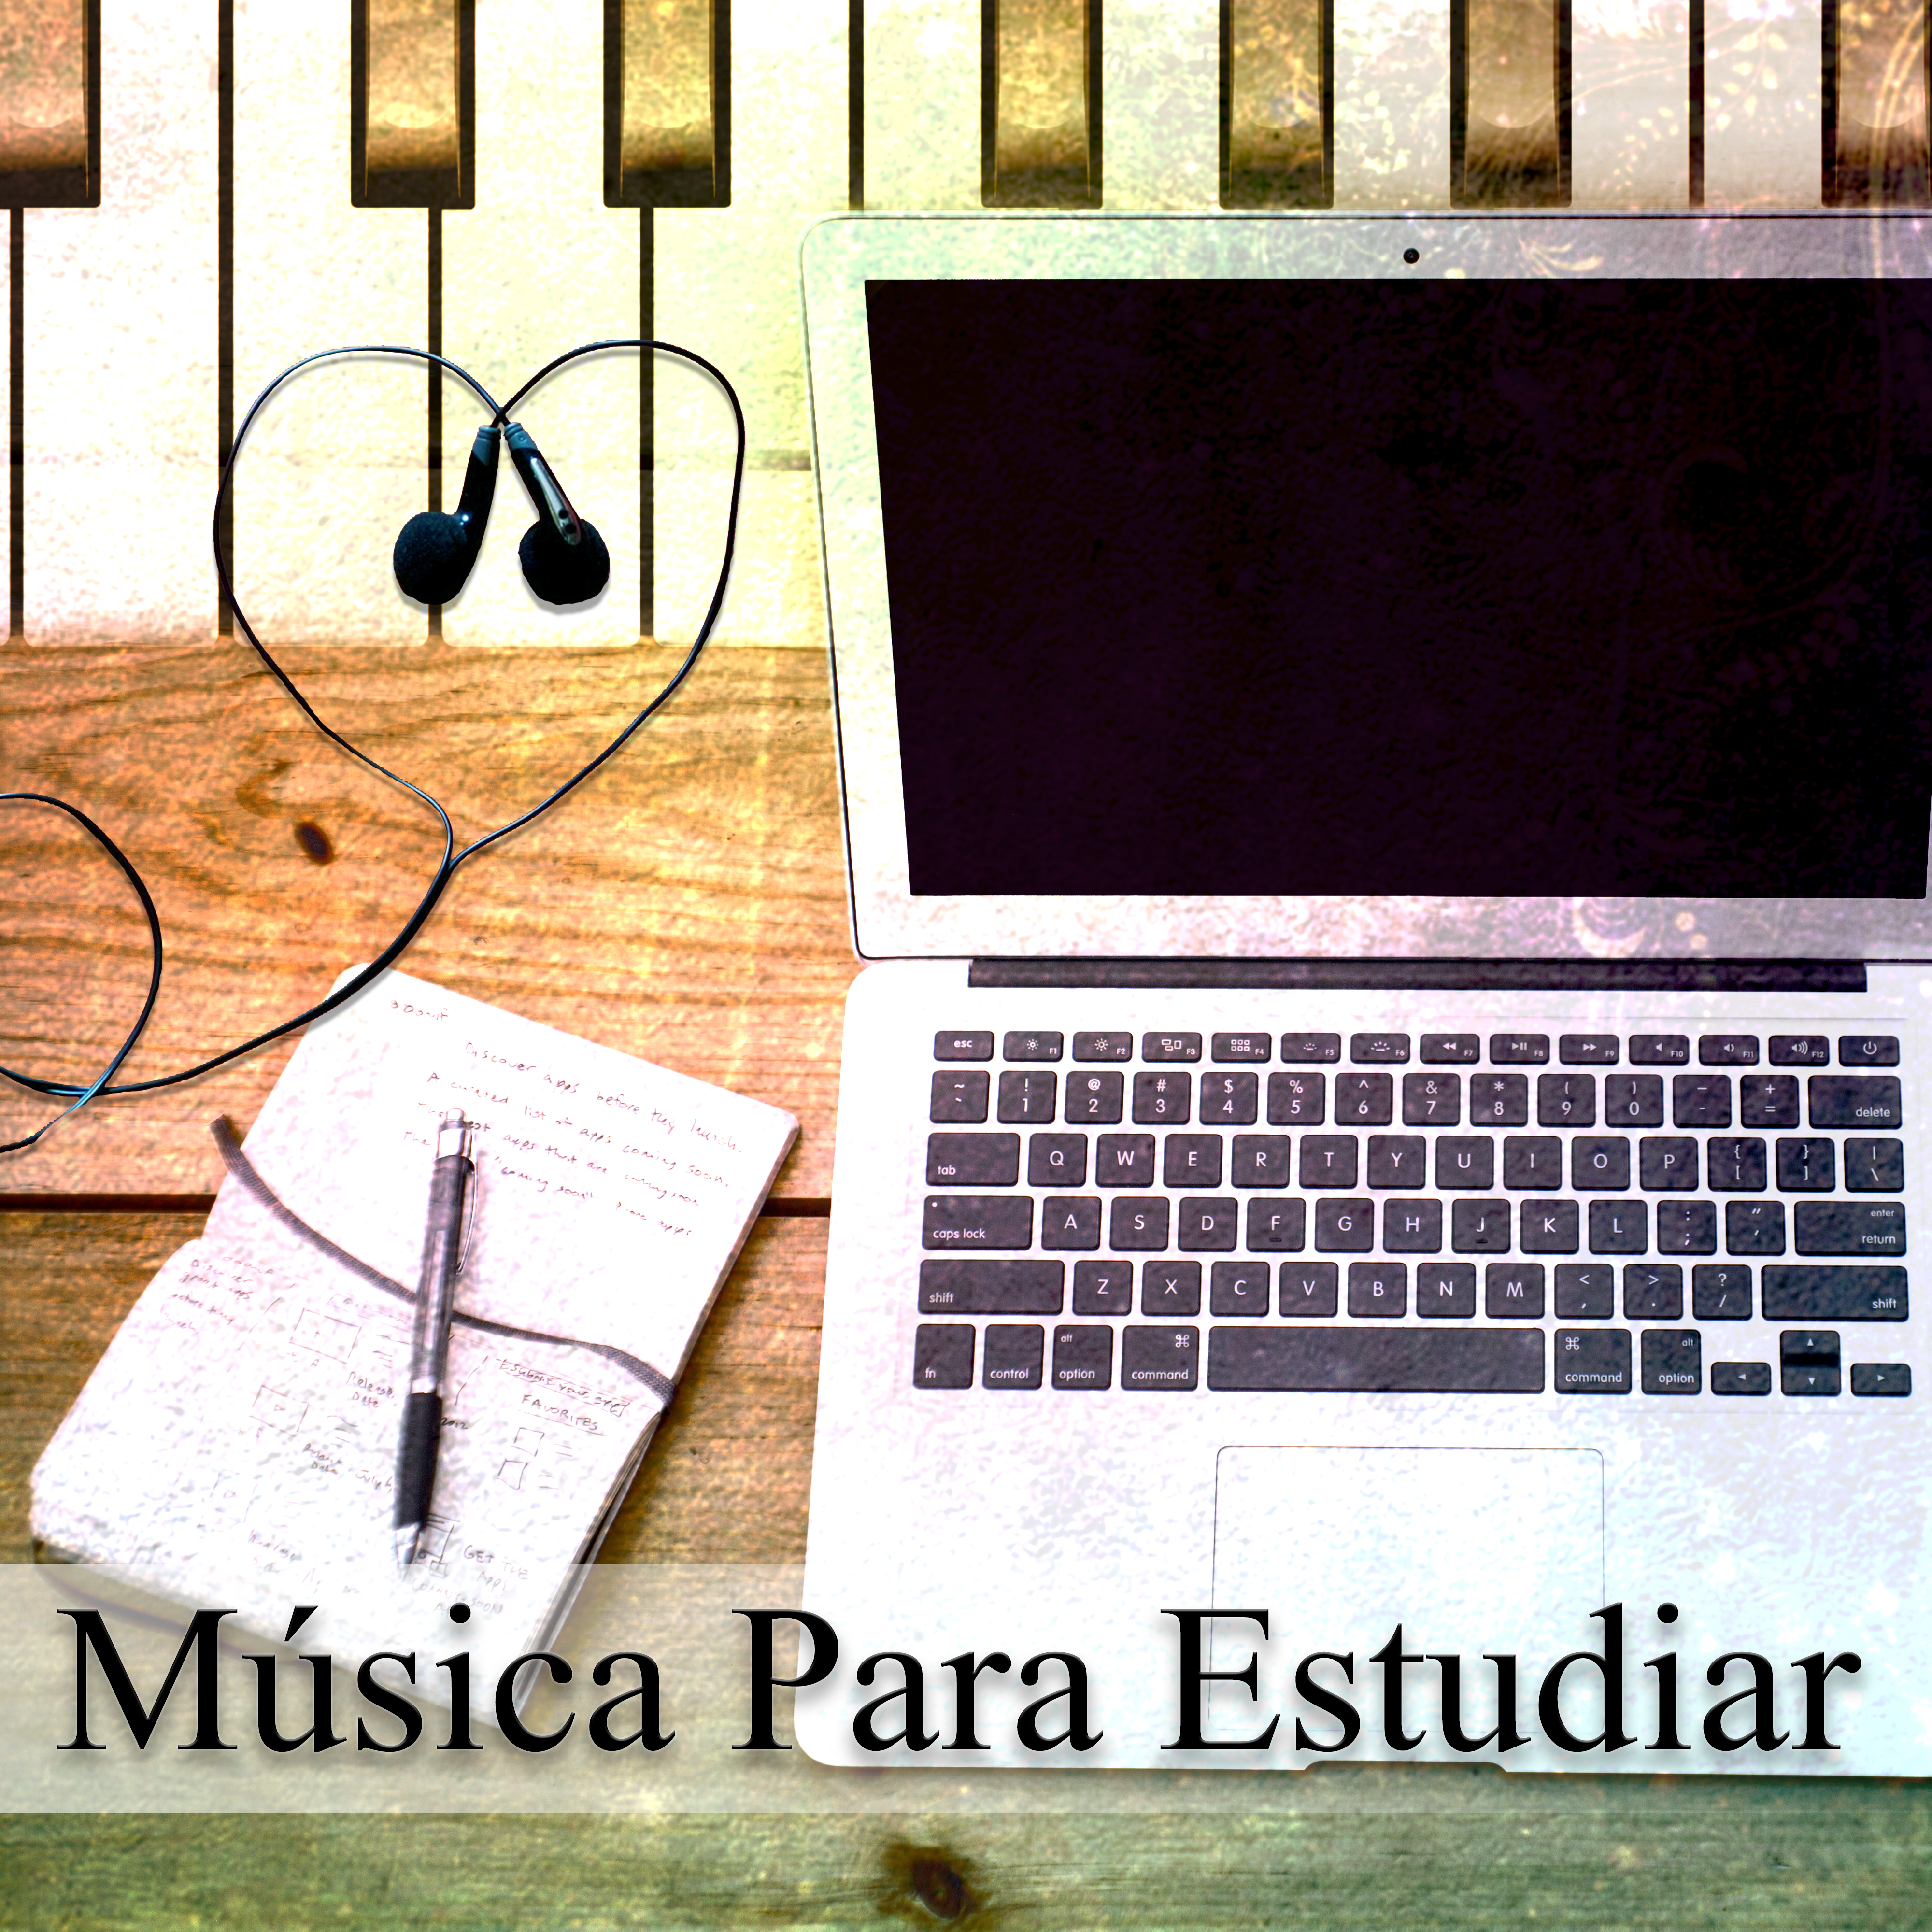 Música para Estudiar - Música de Piano en la Calma de la Concentración, el Poder del Cerebro, Mejorar las Habilidades de Aprendizaje y Atención, Música de Fondo, la Música para Aprender